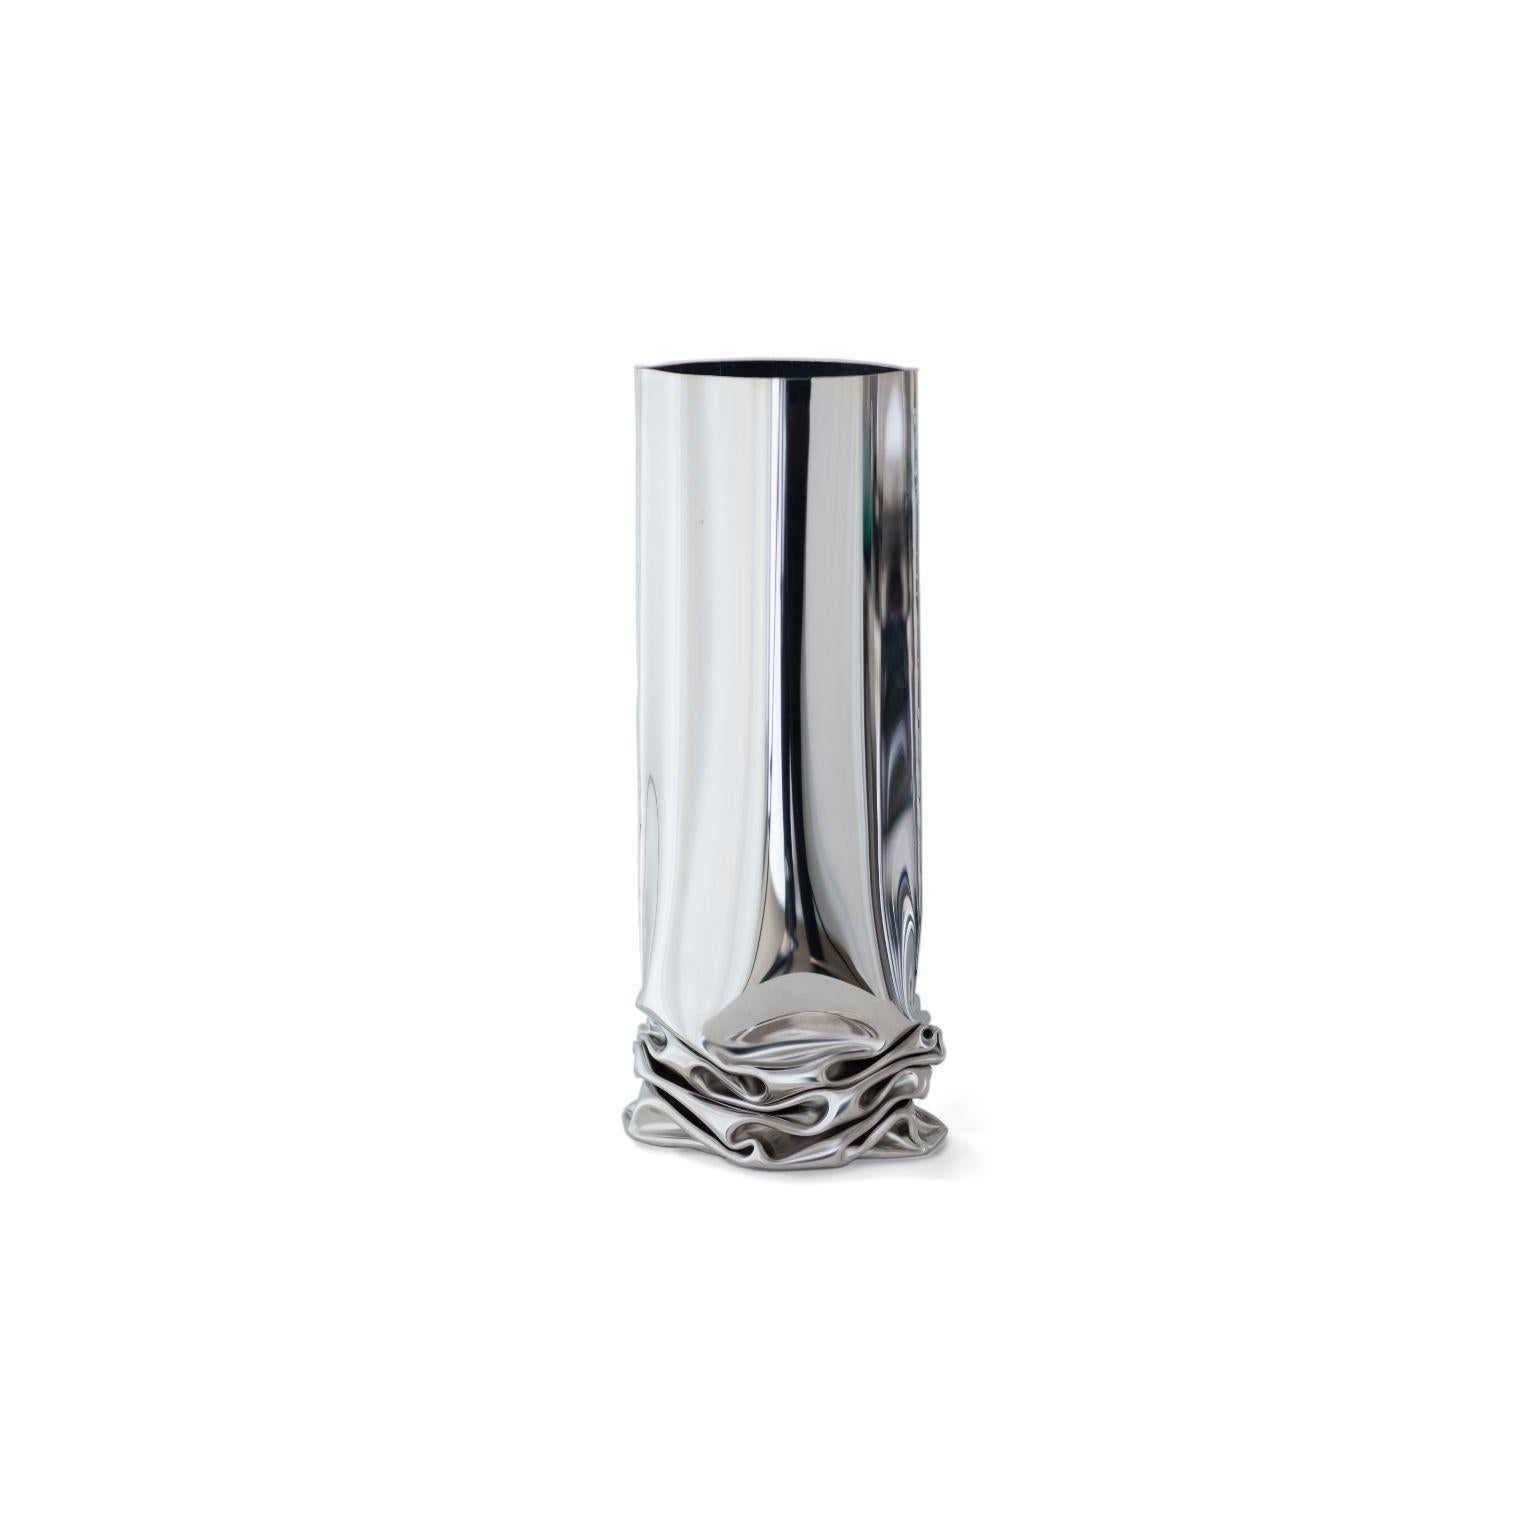 Crash 1 vase von Zieta
Abmessungen: T 20 x B 13,5 x H 30 cm
MATERIAL: rostfreier Stahl.

Das Hauptziel von Zieta ist es, Einzigartigkeit und Individualität in Design und Konstruktion zu bieten und gleichzeitig Produktion, Transport und Lagerhaltung